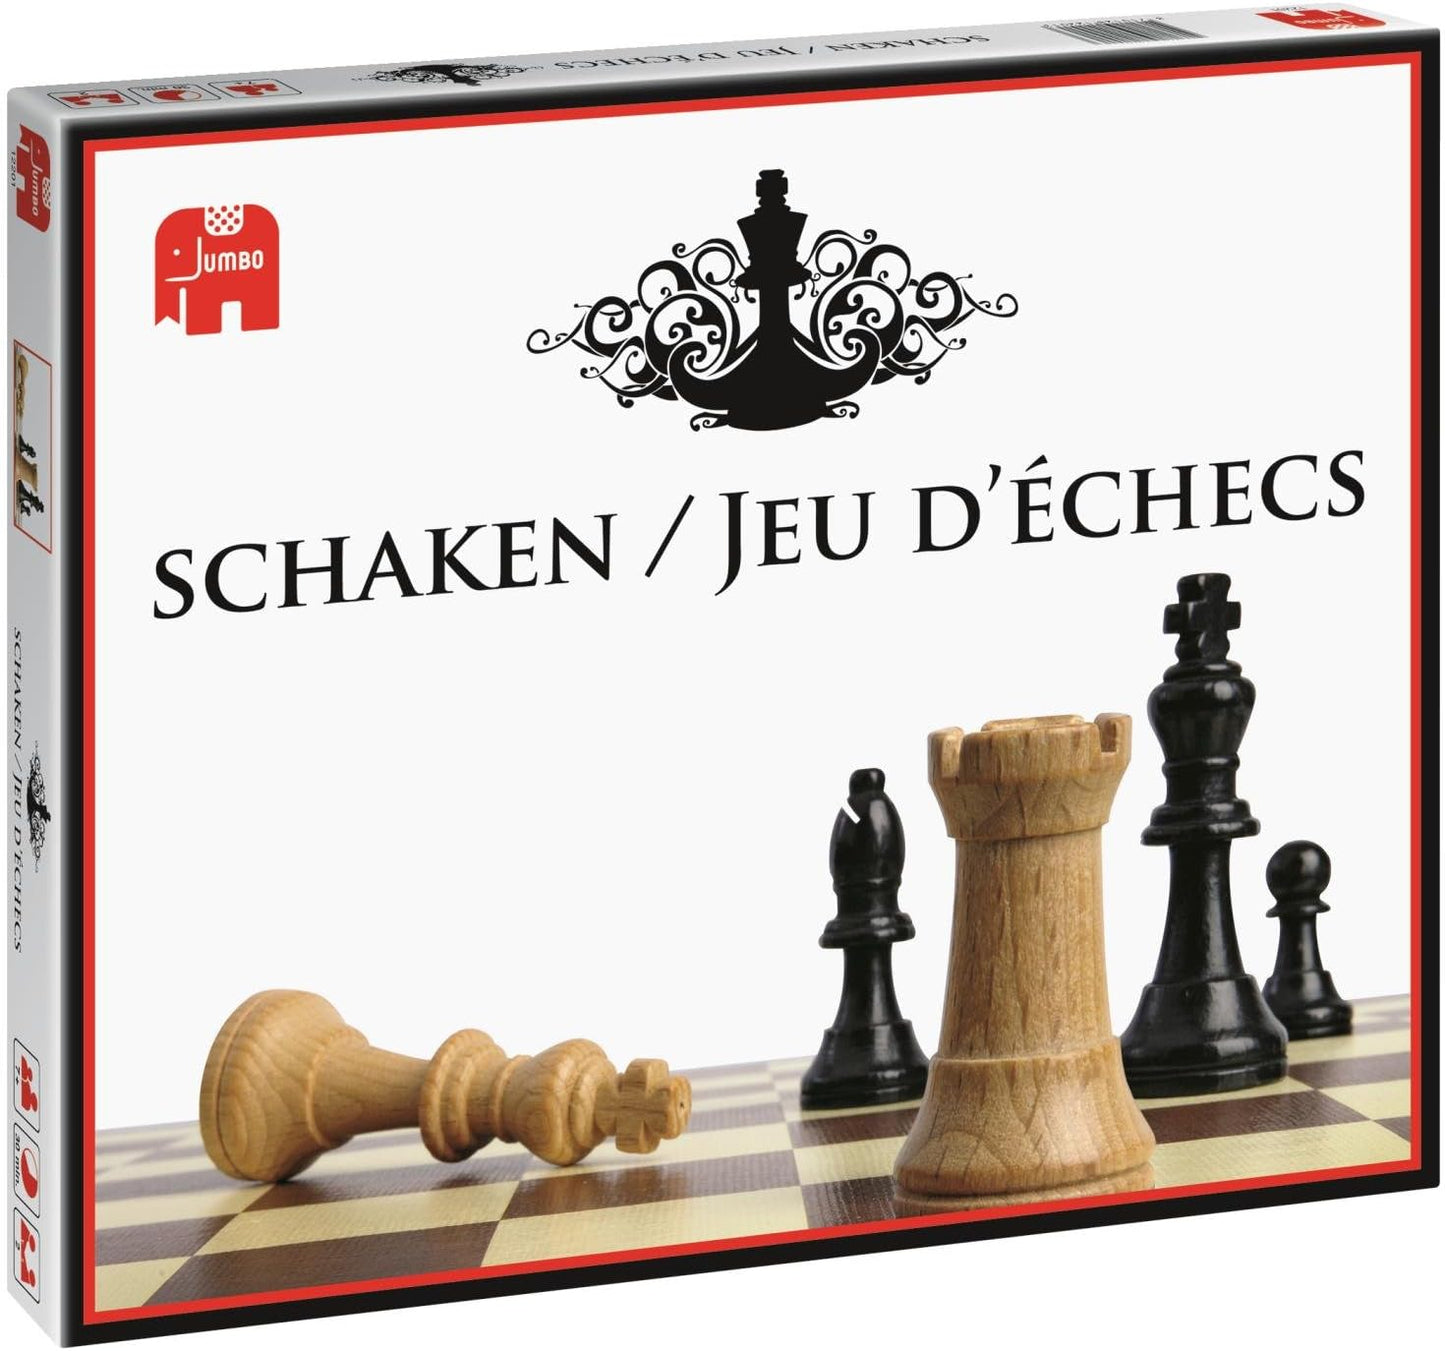 Schaken/ Jeu d'échecs - product image - Jumboplay.com